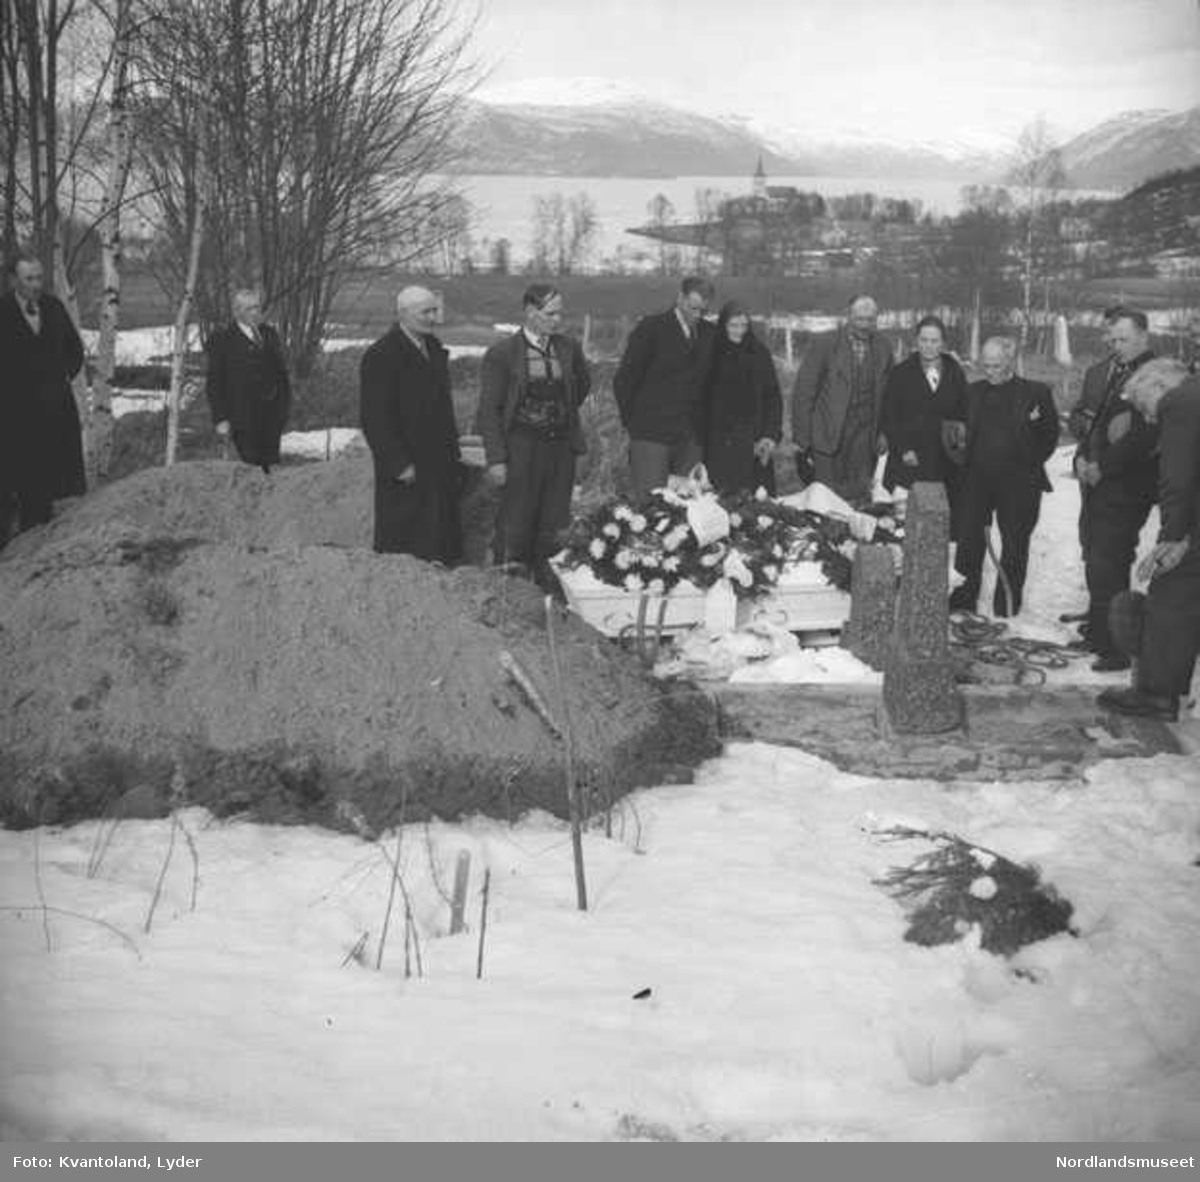 Kvantolands protokoll: Begravelsen til Peder Kristensen, Hestvik.
Ekstern kommentar: Nr. 7 fra venstre er Elling Johannesen